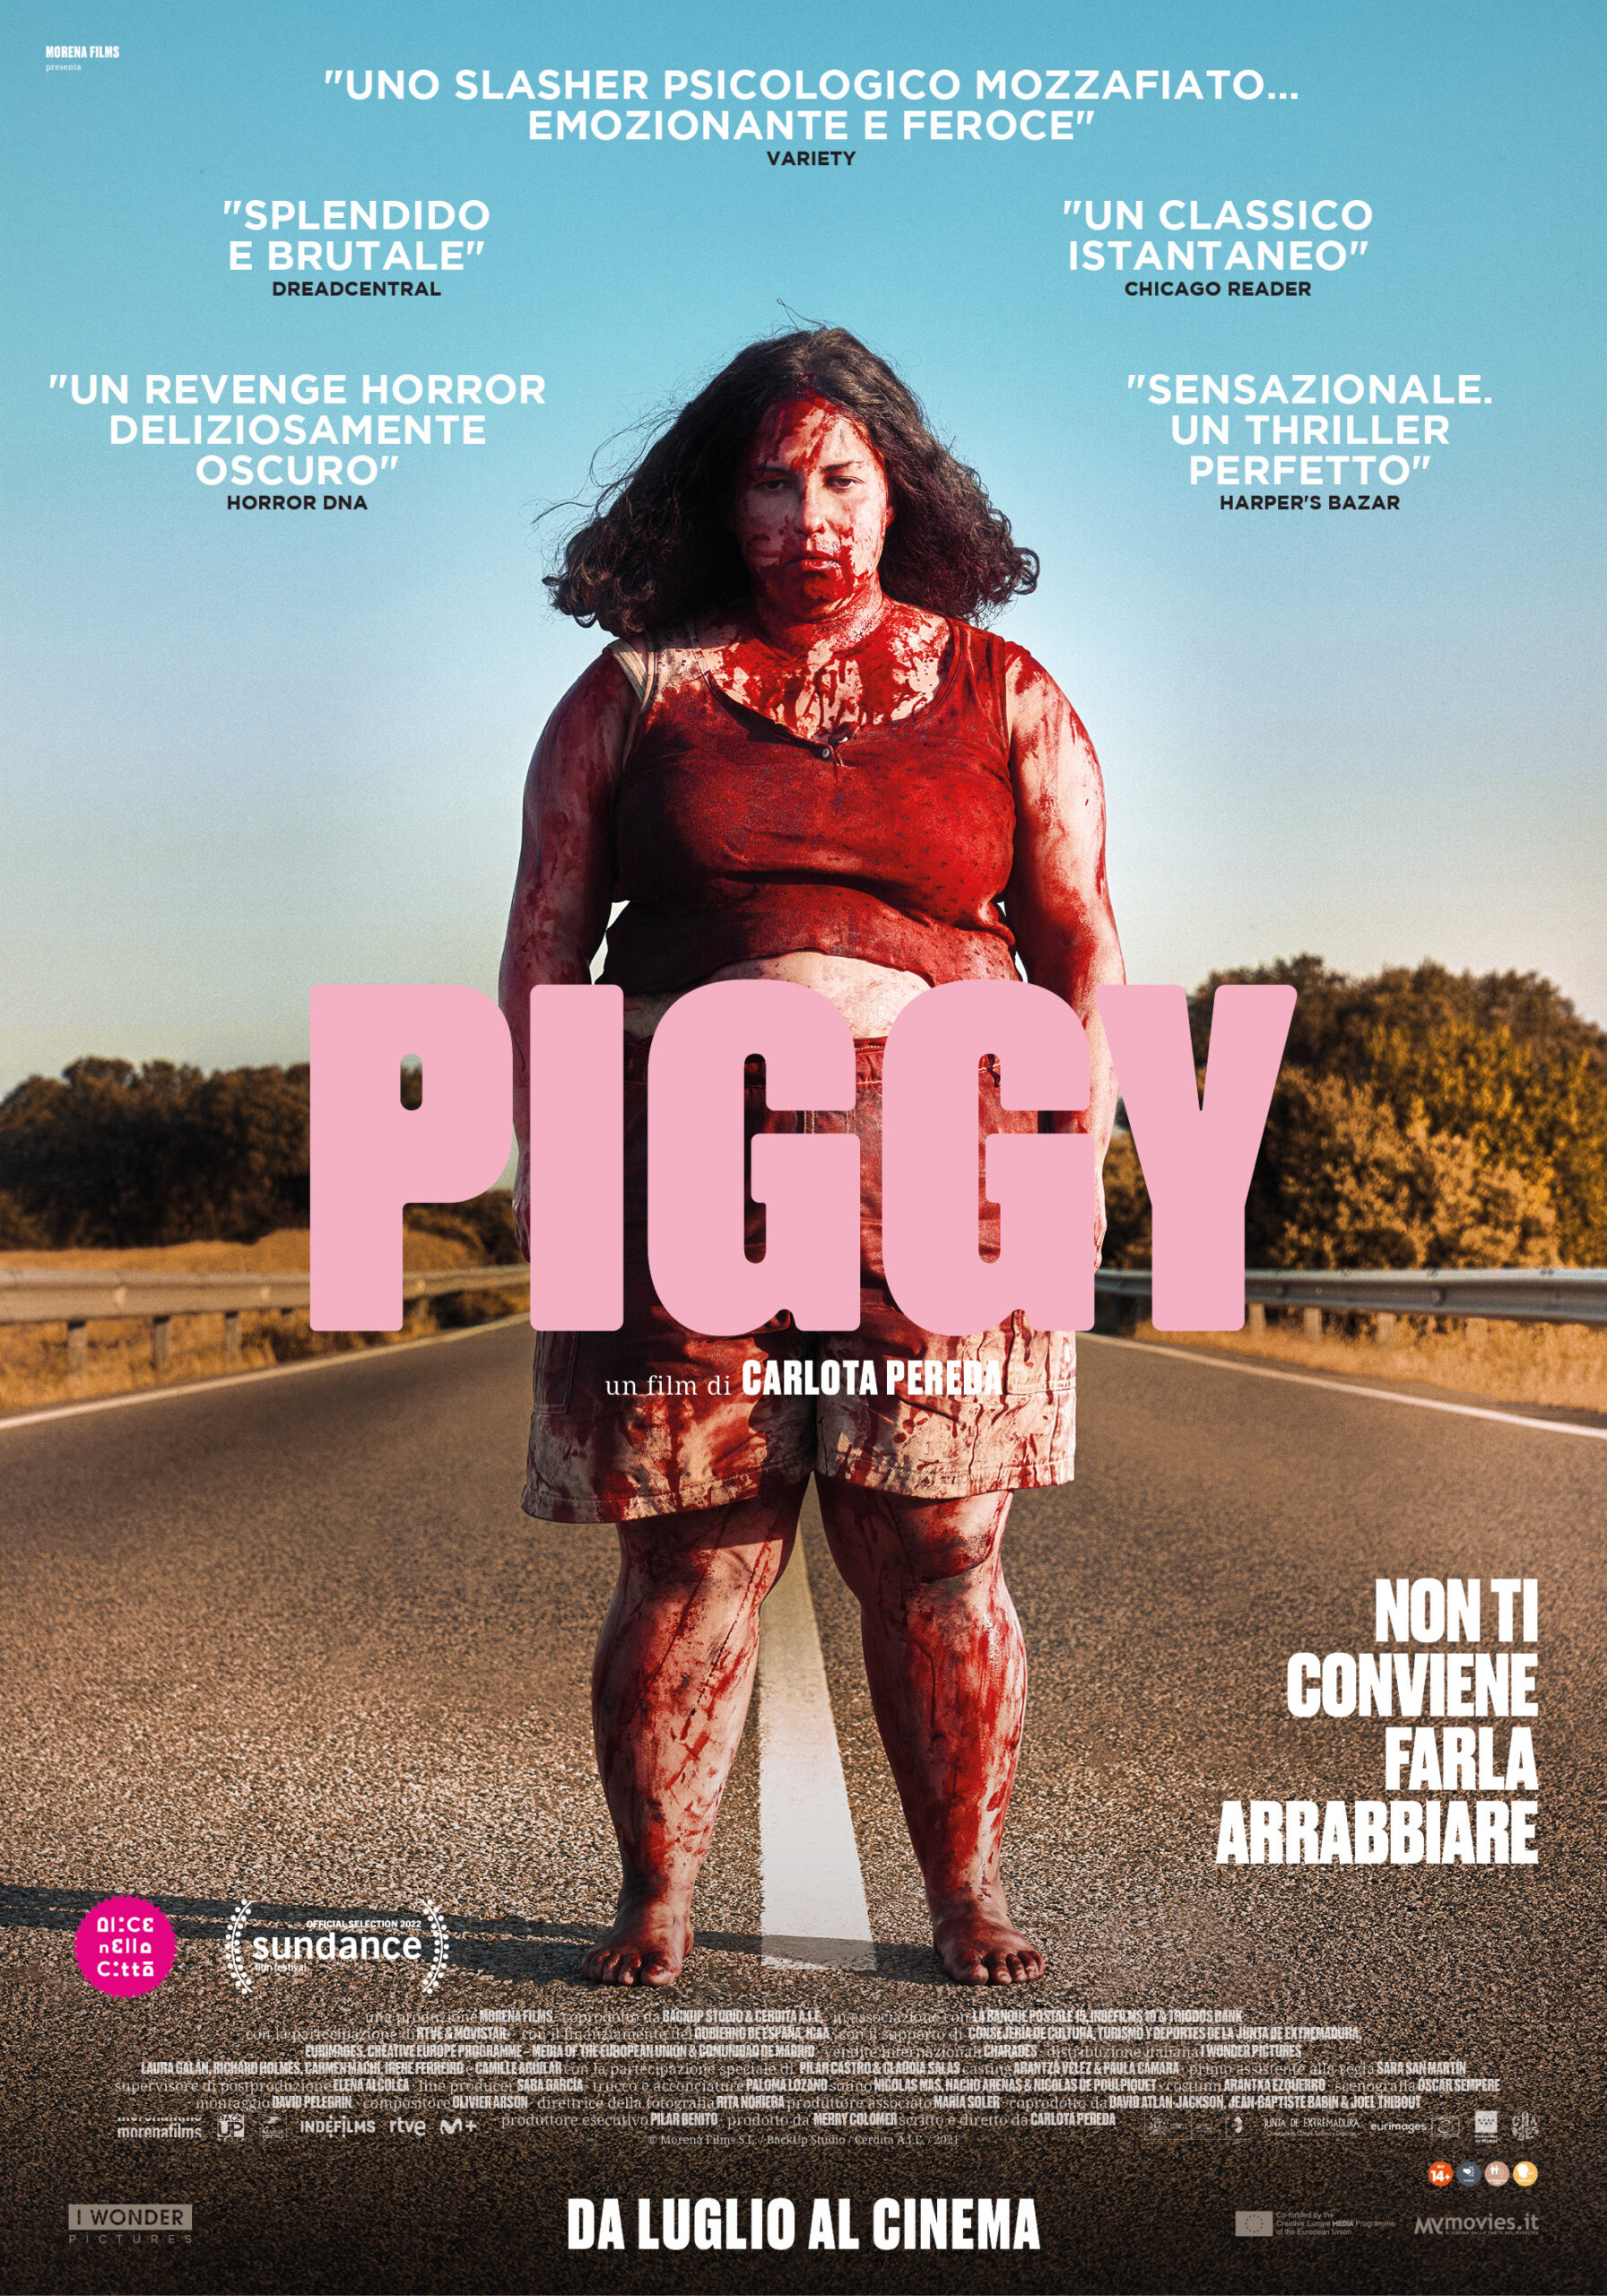 Piggy: 4 clip tratte dallo slasher spagnolo nelle sale da oggi